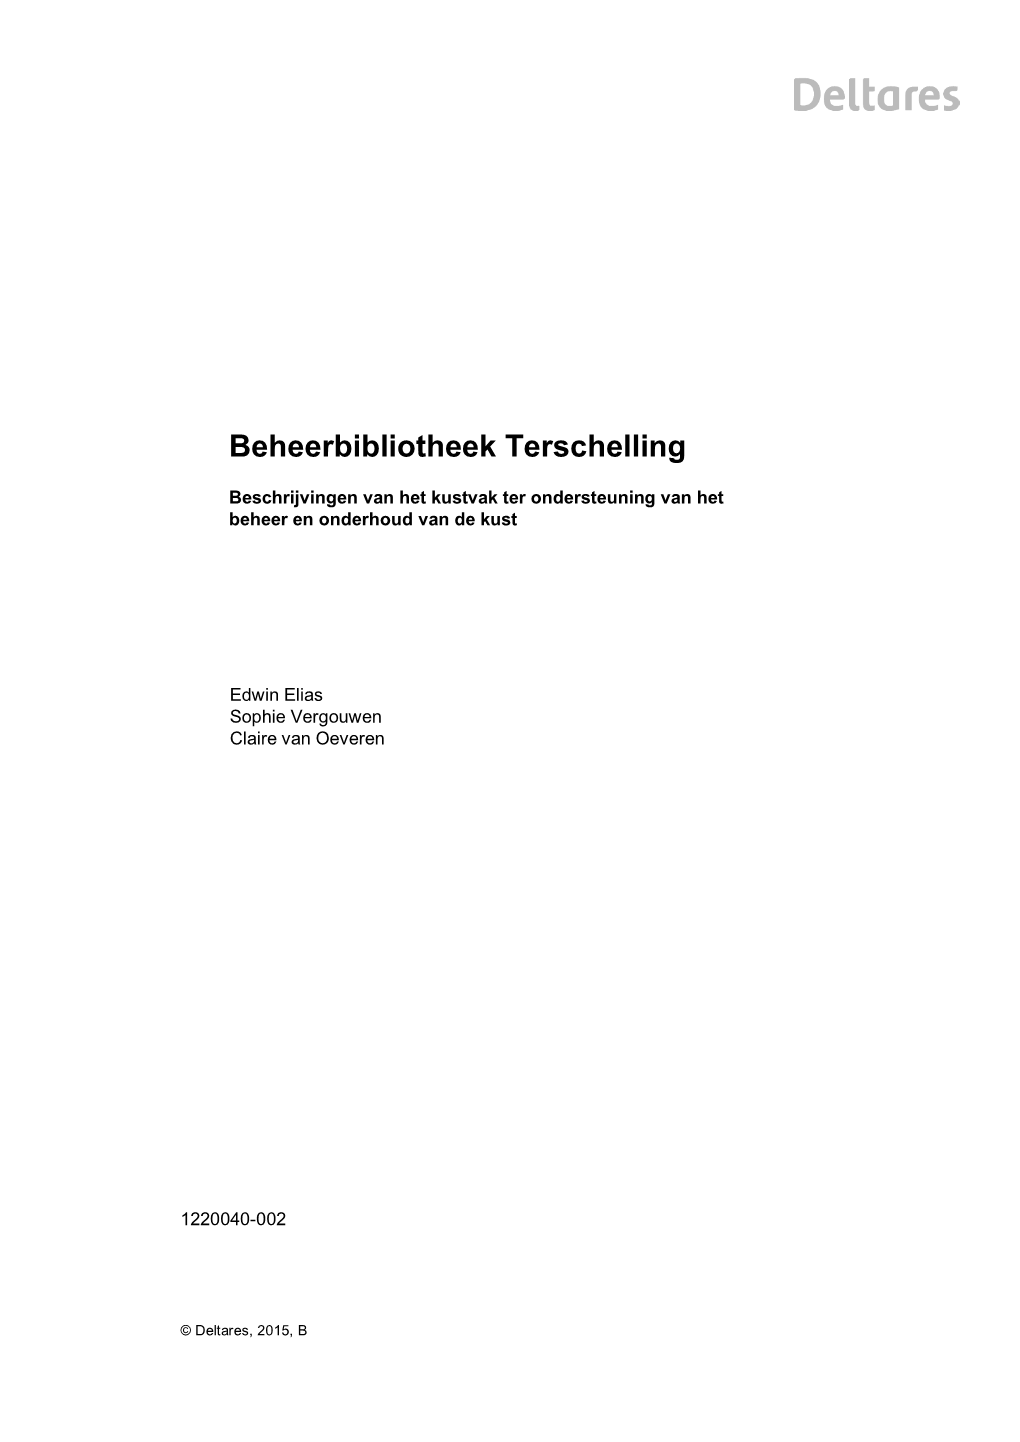 Beheerbibliotheek, Kustvak Terschelling, Morfologische Ontwikkeling, Beheer En Onderhoud Kust